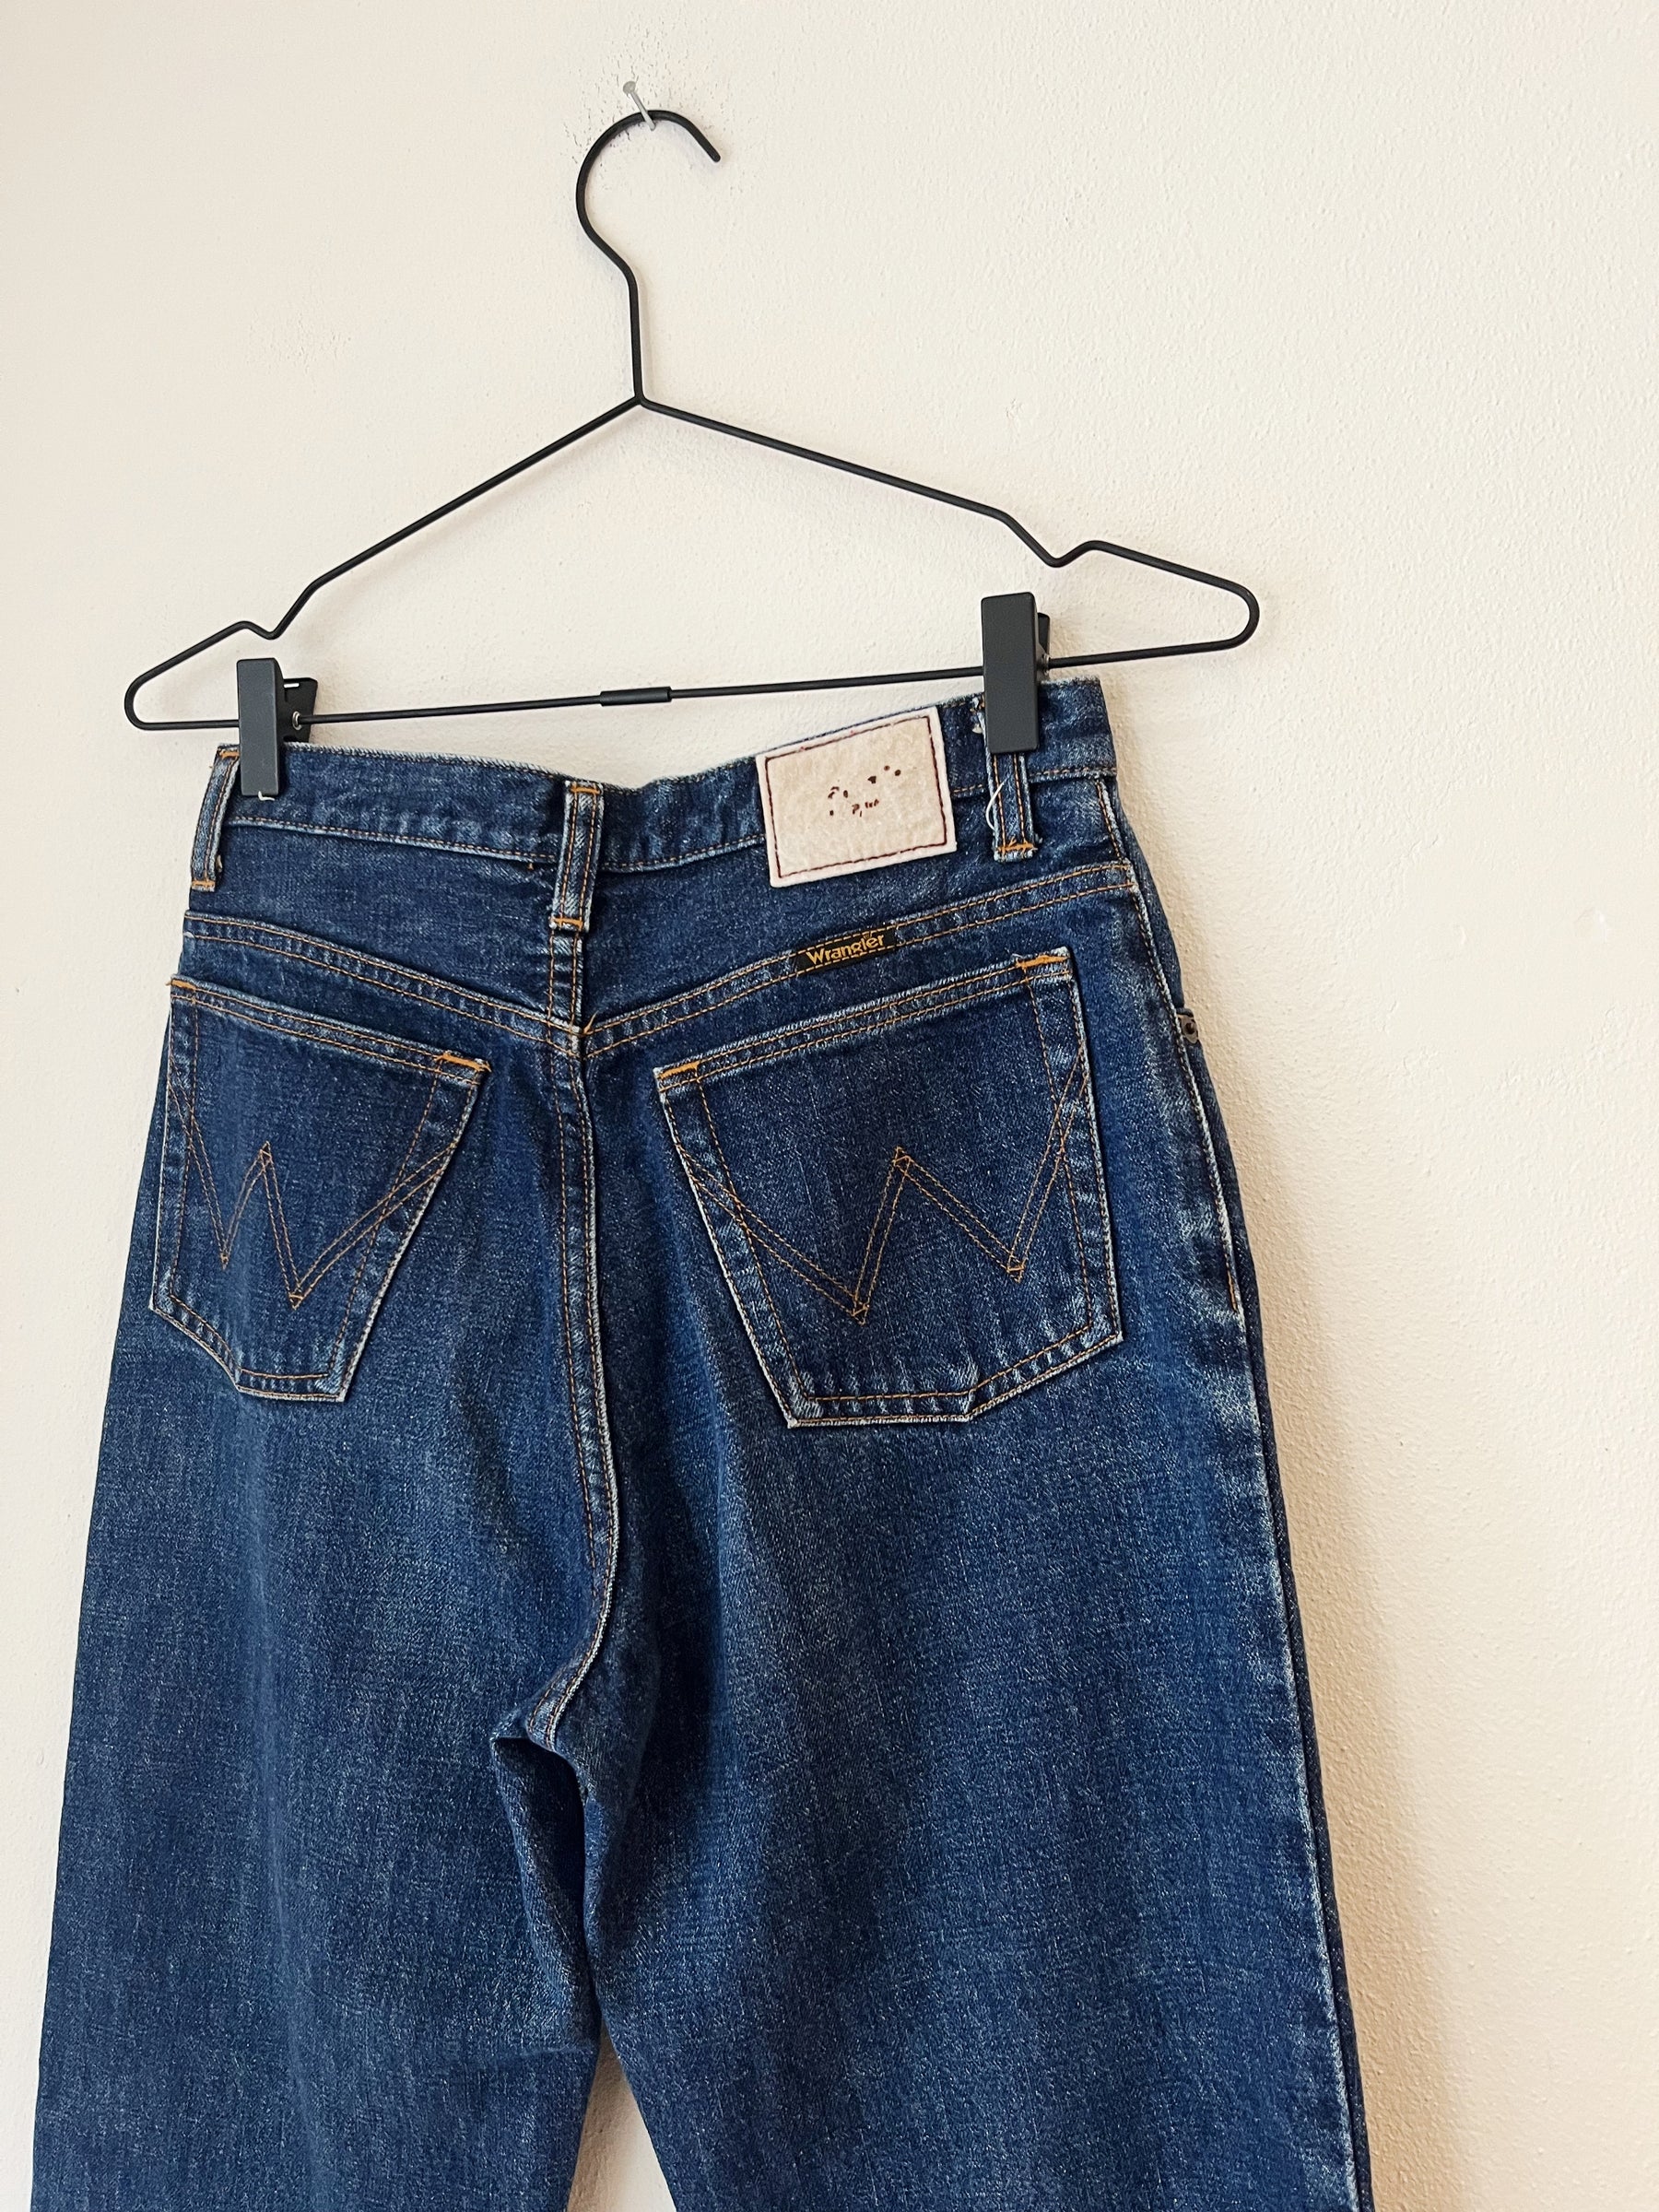 Wrangler vintage jeans